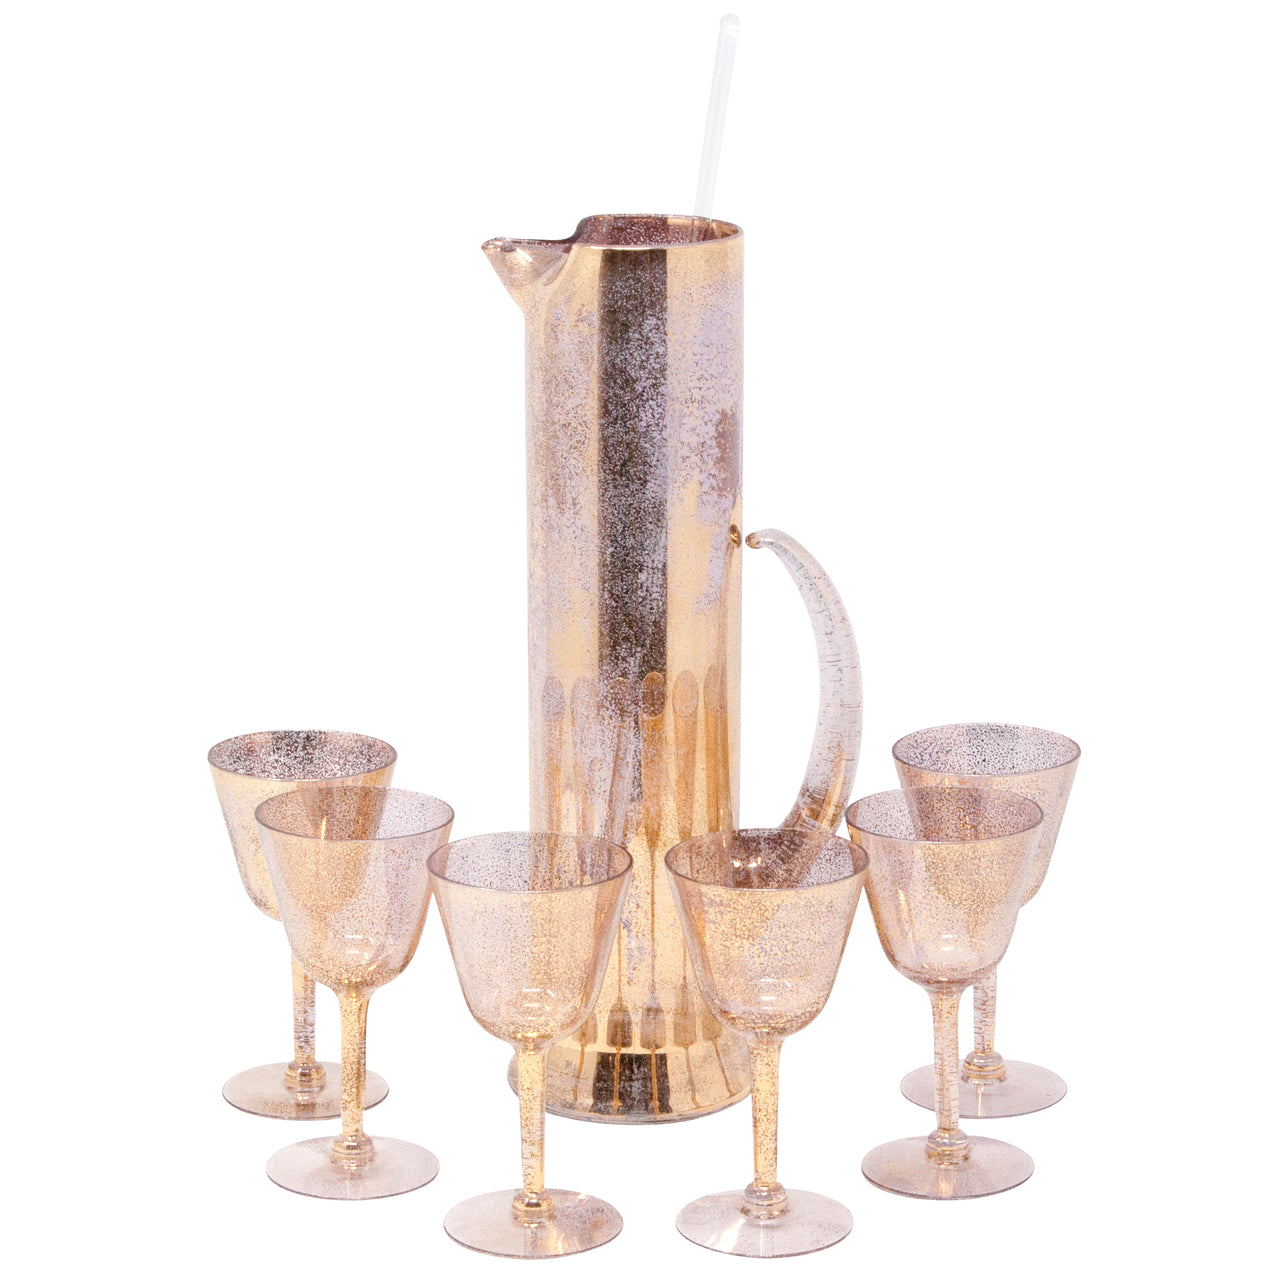 https://thehourshop.com/cdn/shop/products/13090-Vintage-Gold-Fleck-Shimmer-Empire-Cocktail-Pitcher-Glasses-Set_1280x1280.jpg?v=1594224028